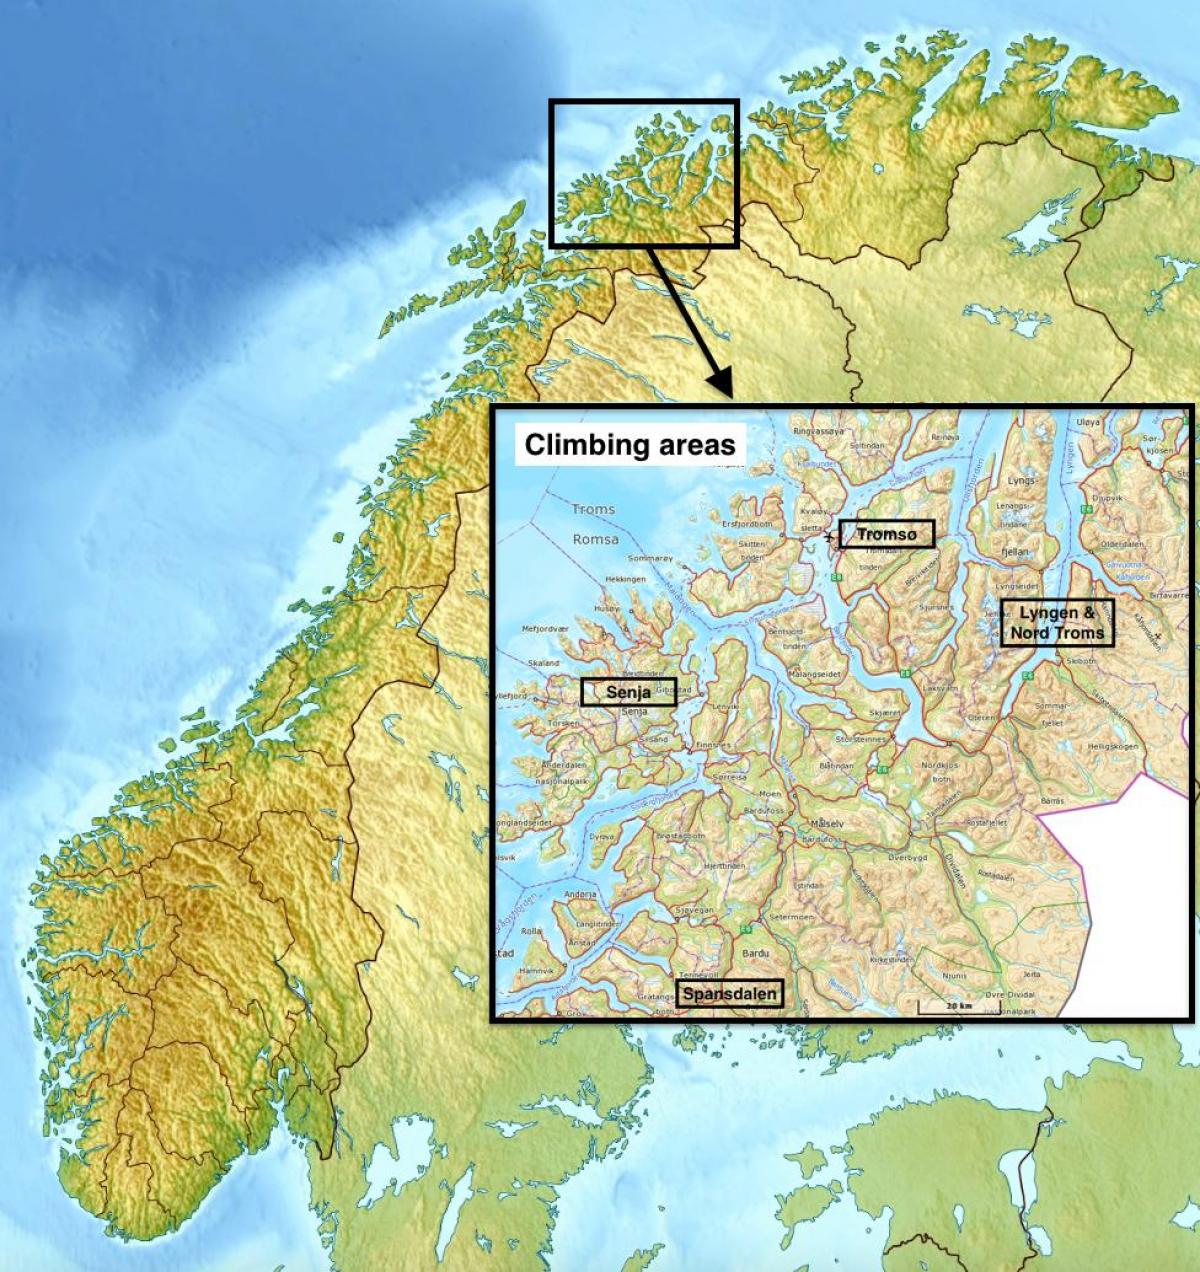 tromsø کے ناروے کا نقشہ